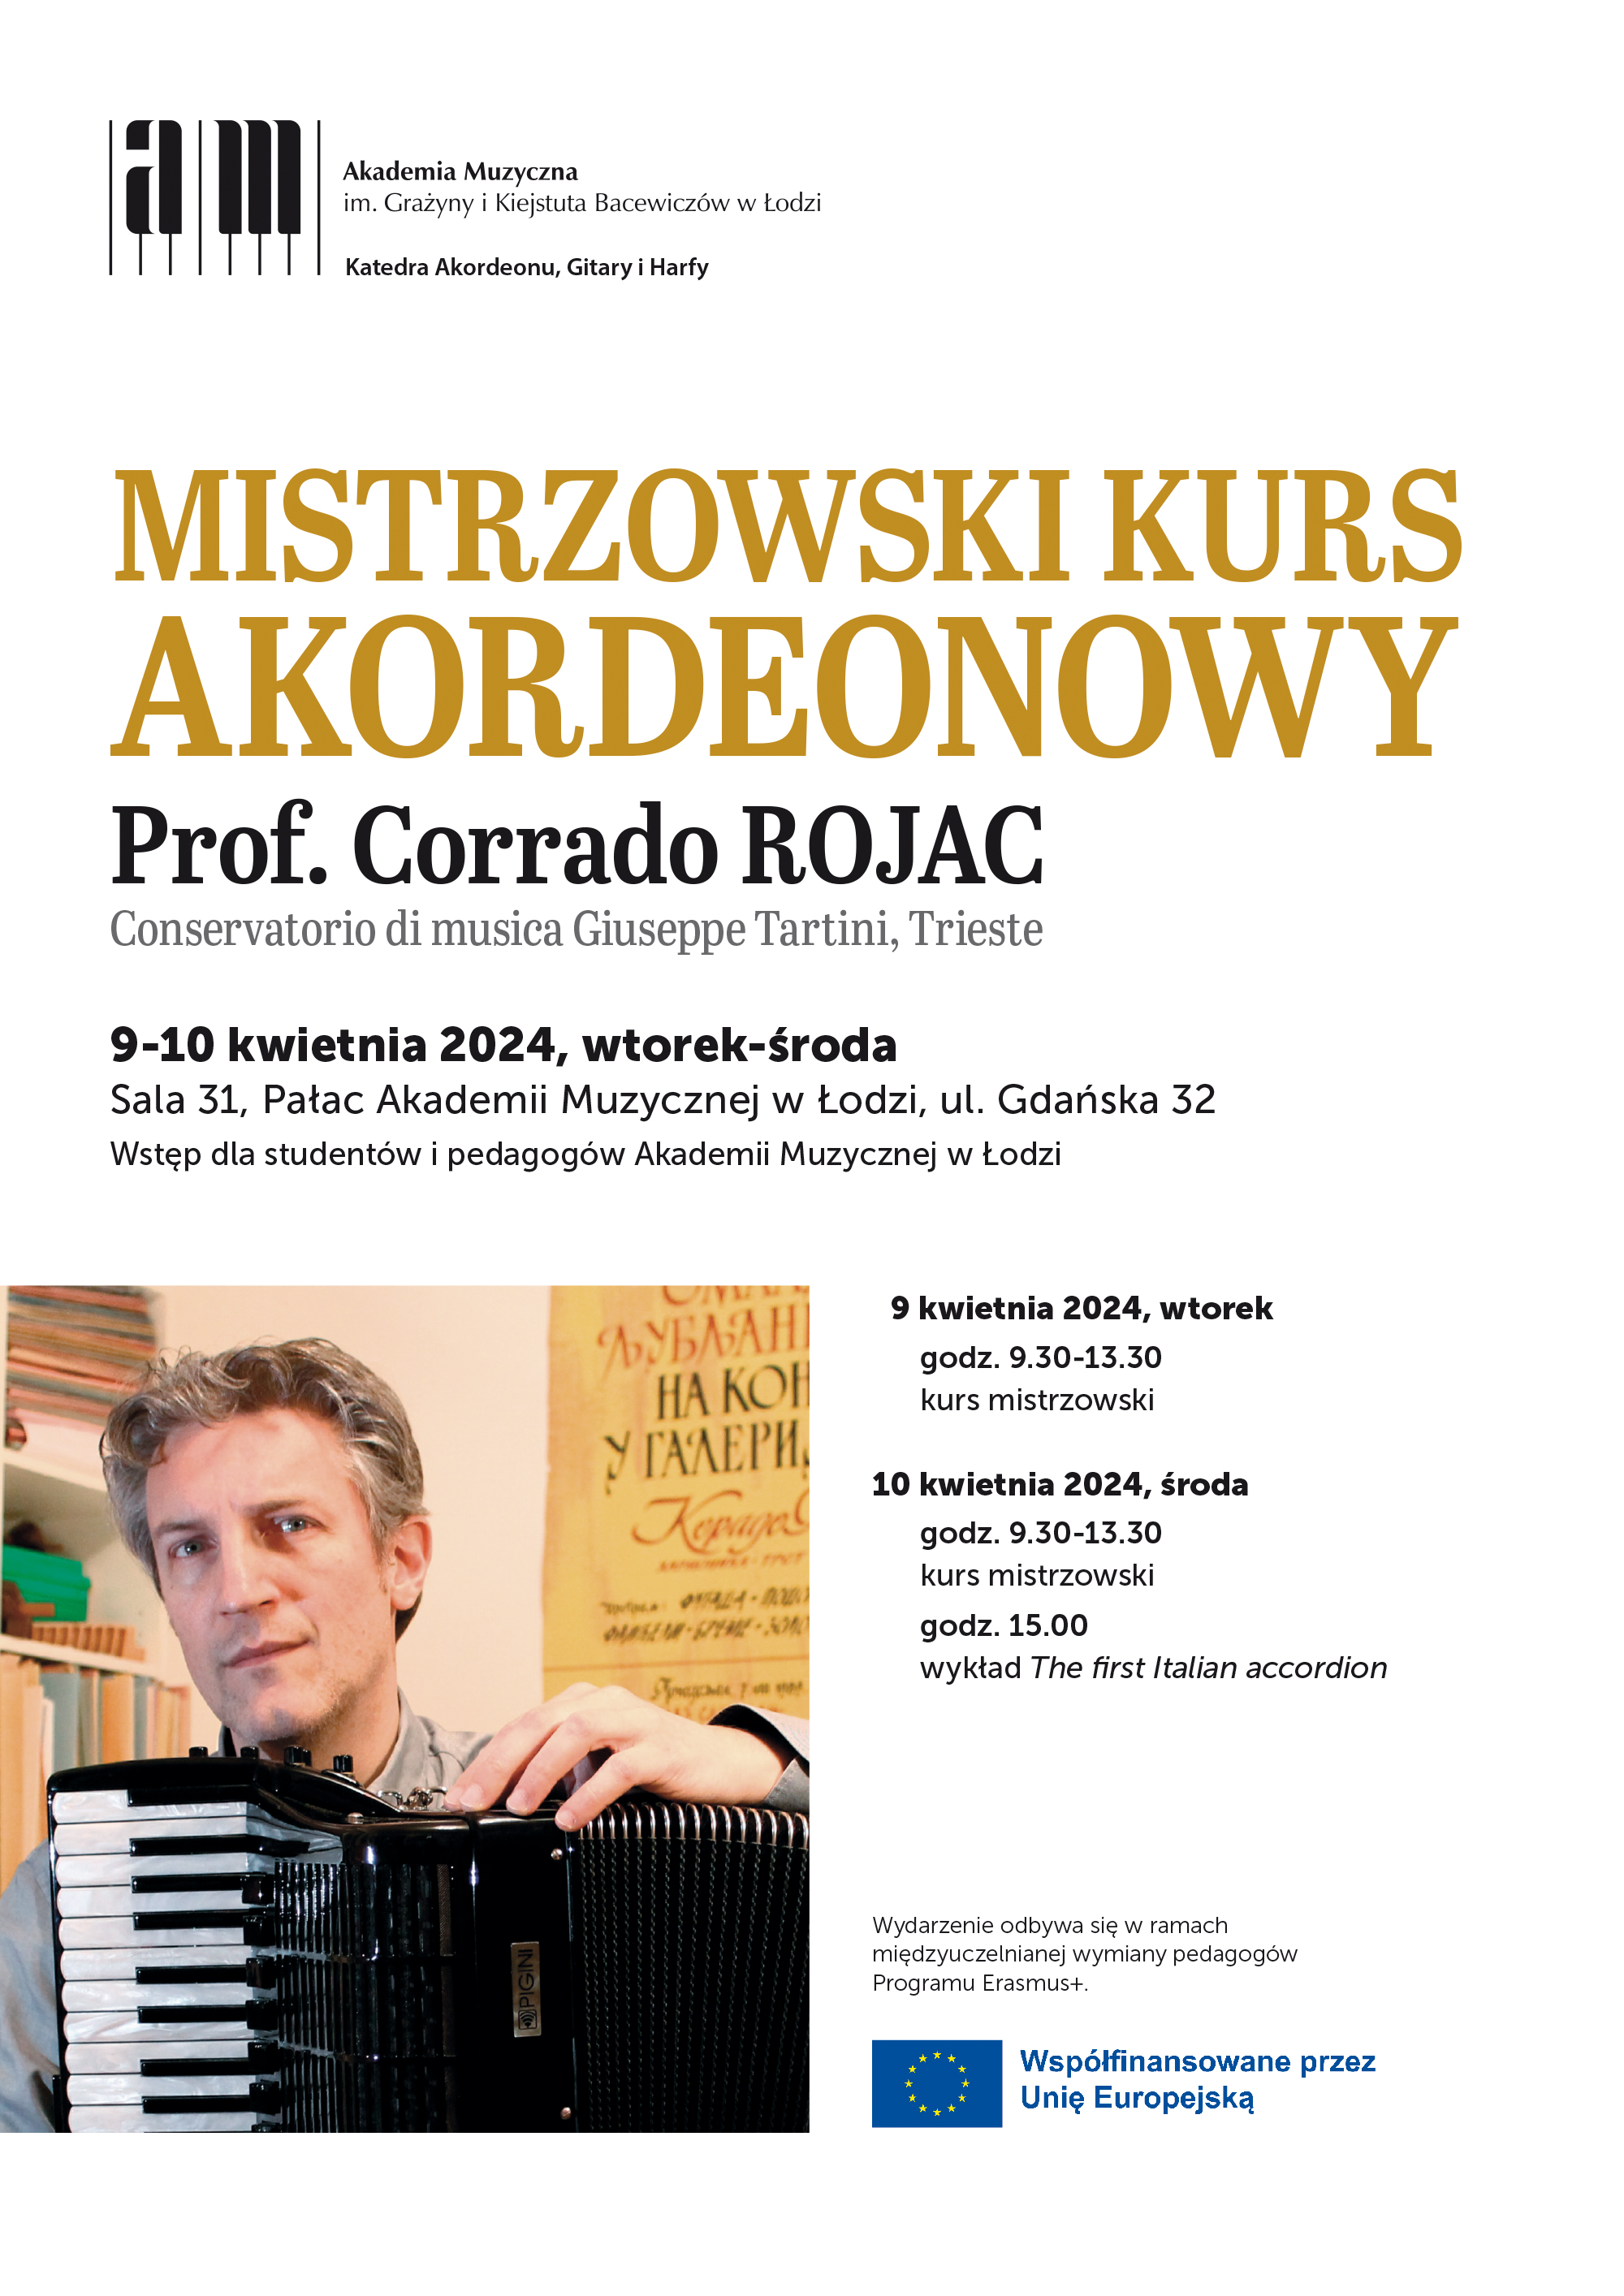 Mistrzowski kurs akordeonowy Corrado Rojac